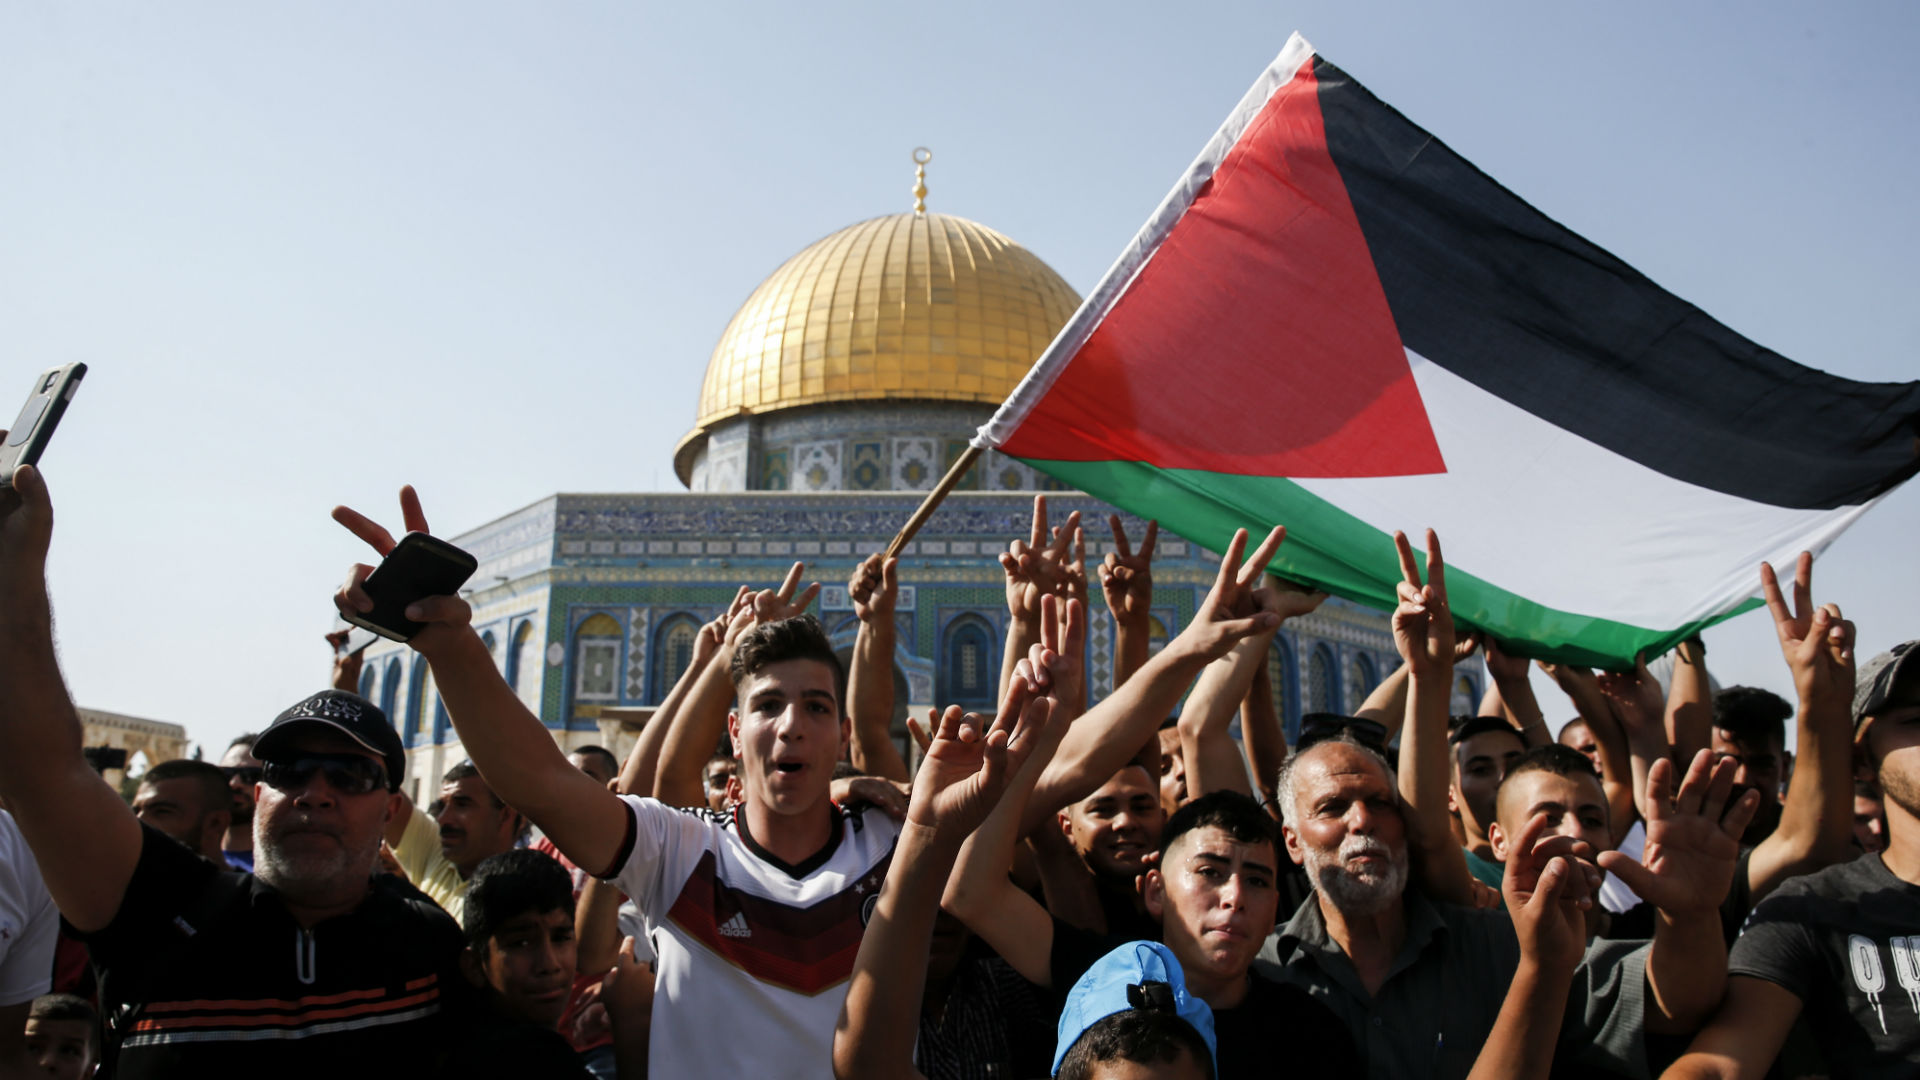 История государства Палестина: путь к самоопределению